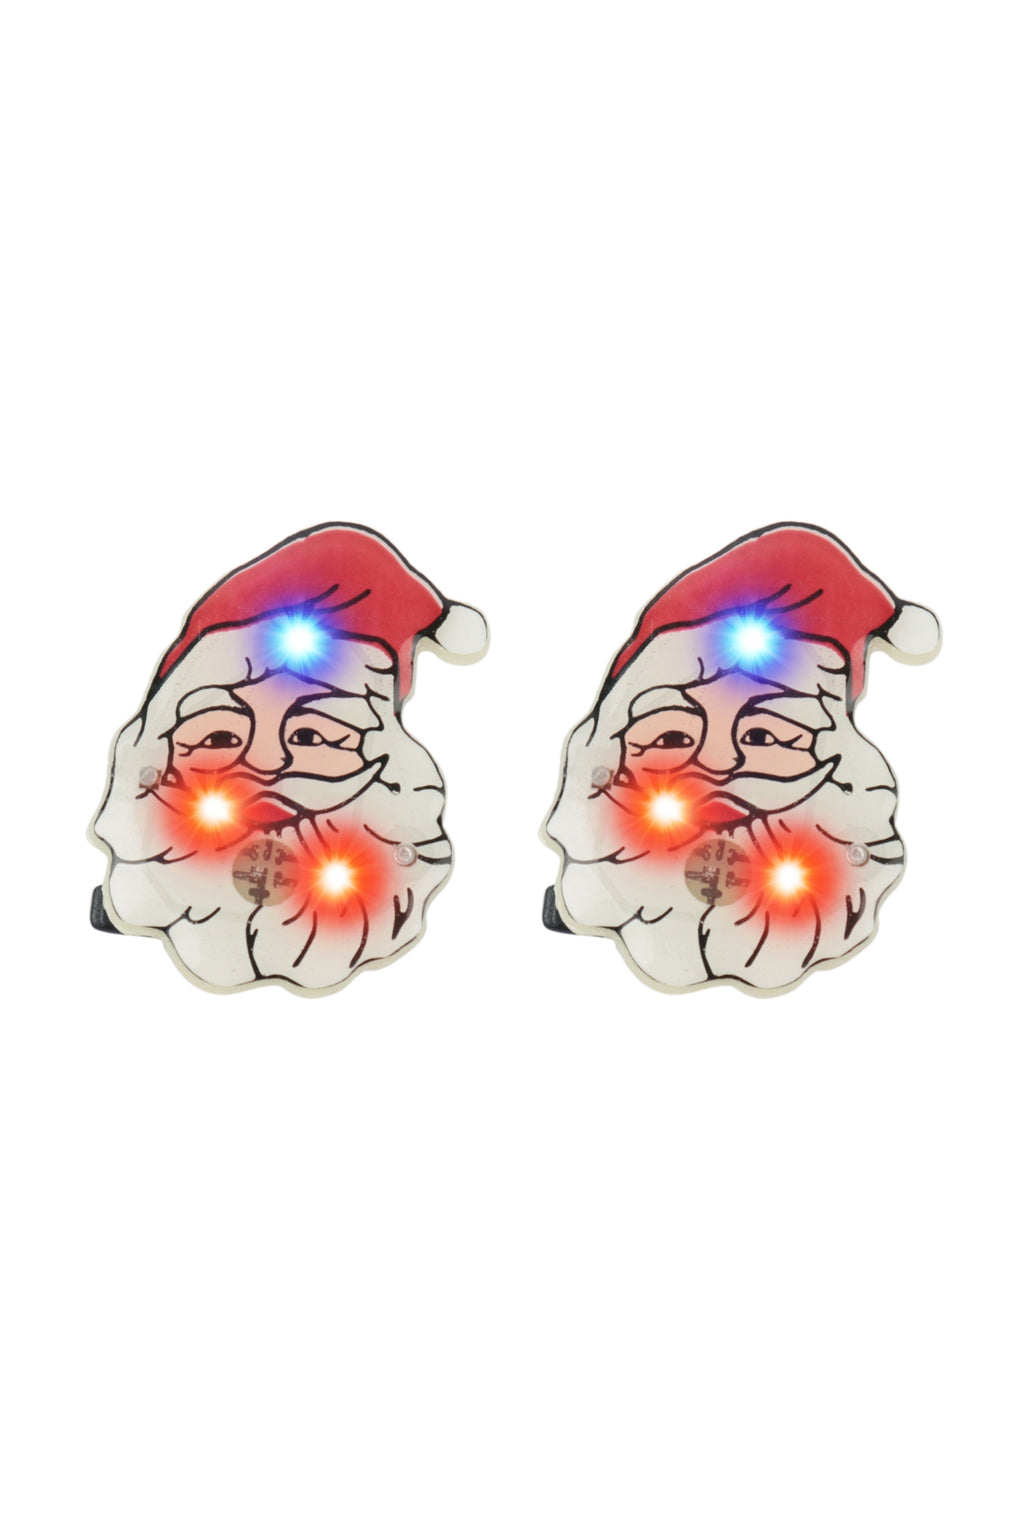 Santa Light Up Earrings Multicolor - Pack of 6